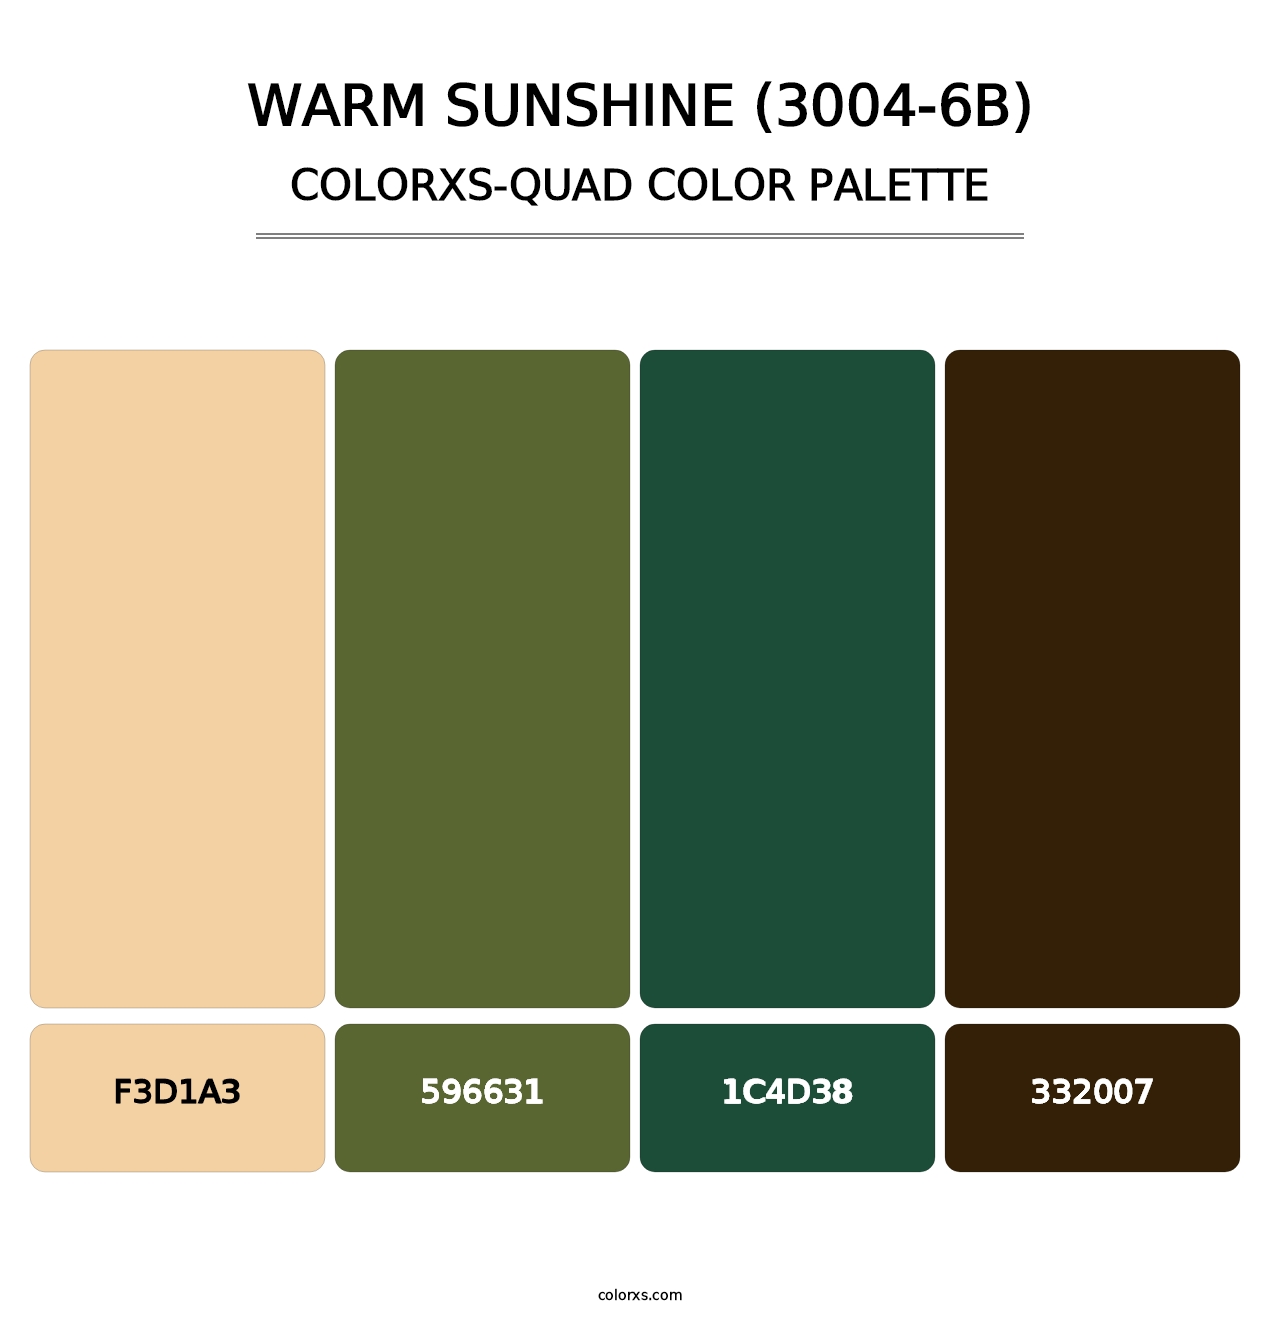 Warm Sunshine (3004-6B) - Colorxs Quad Palette